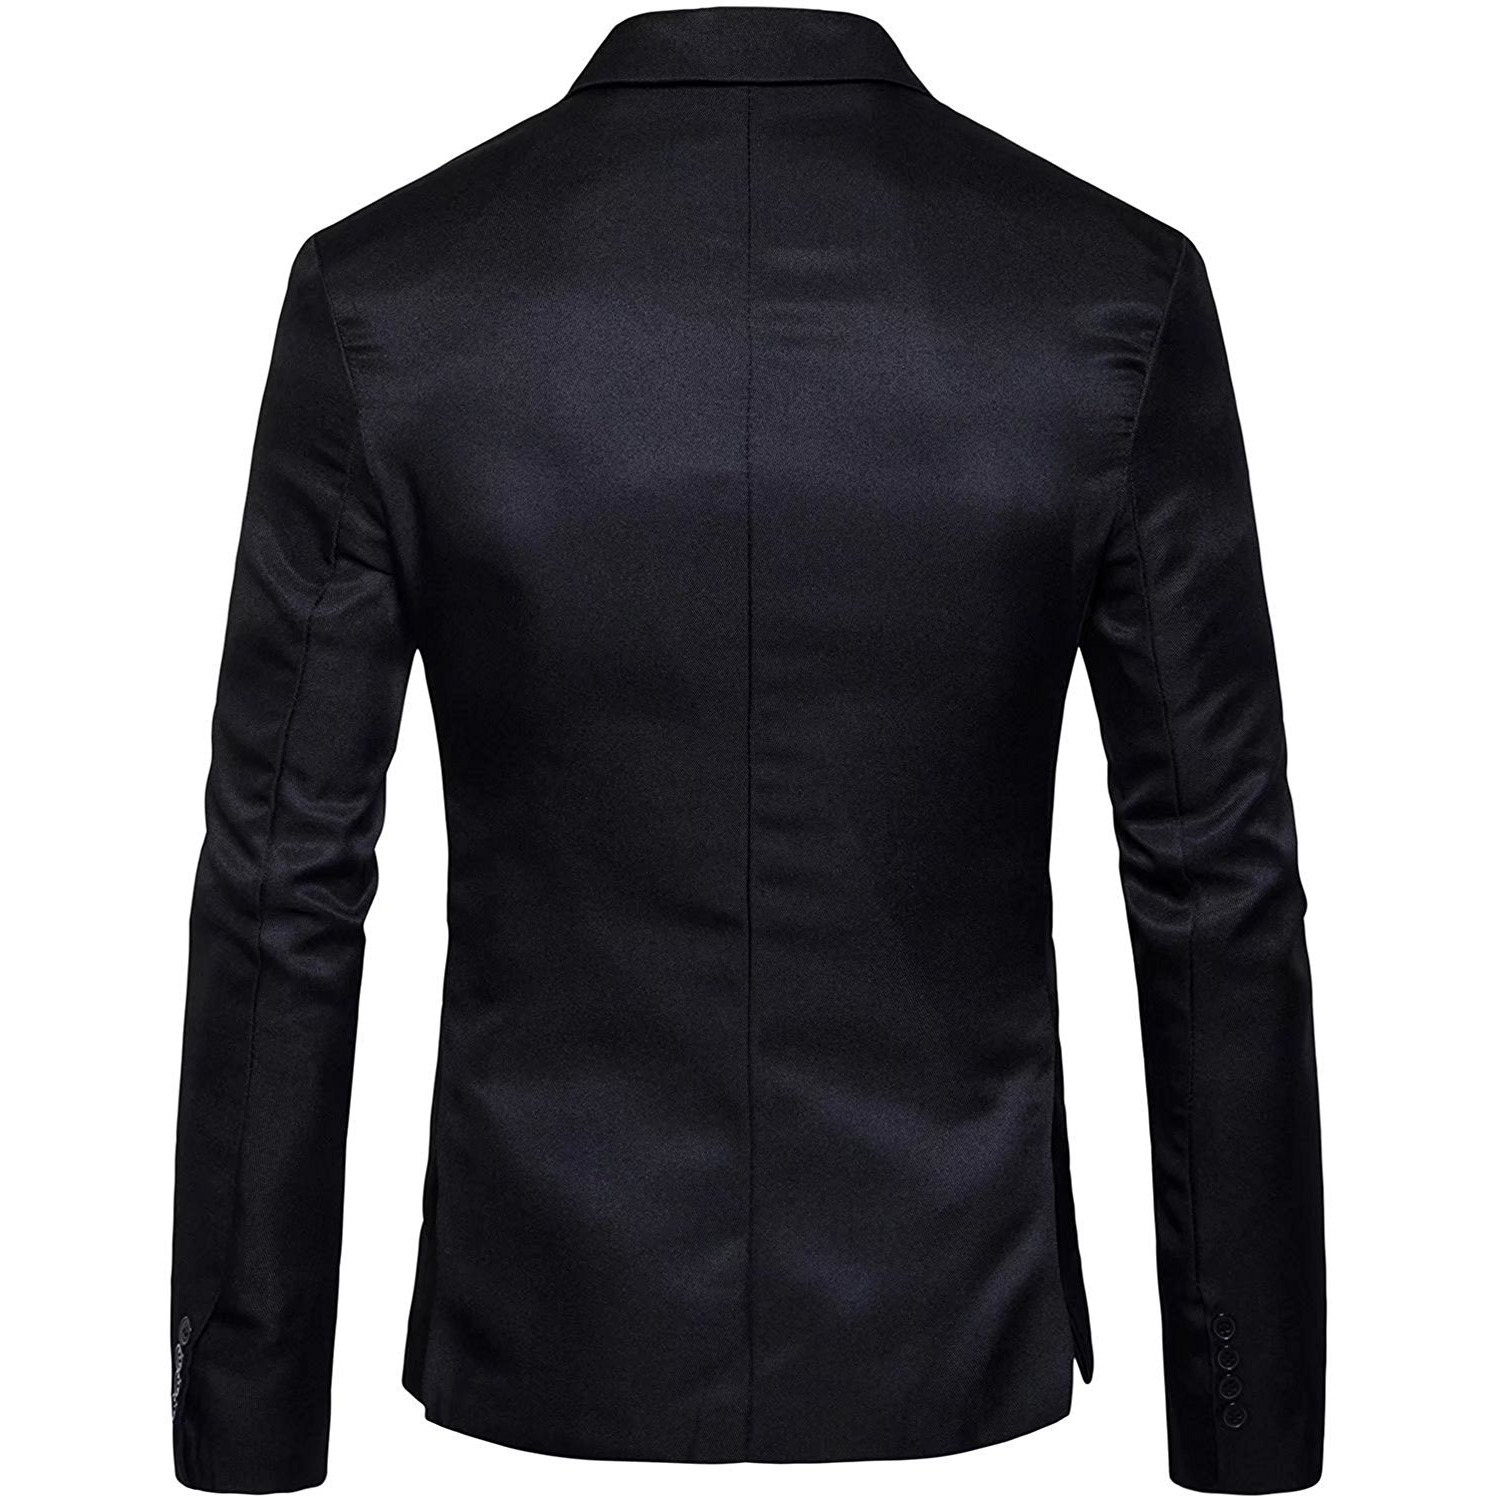 Winmaarc Men's Long Sleeves Peak Lapel Collar One Button Slim Fit Sport Coat Blazer